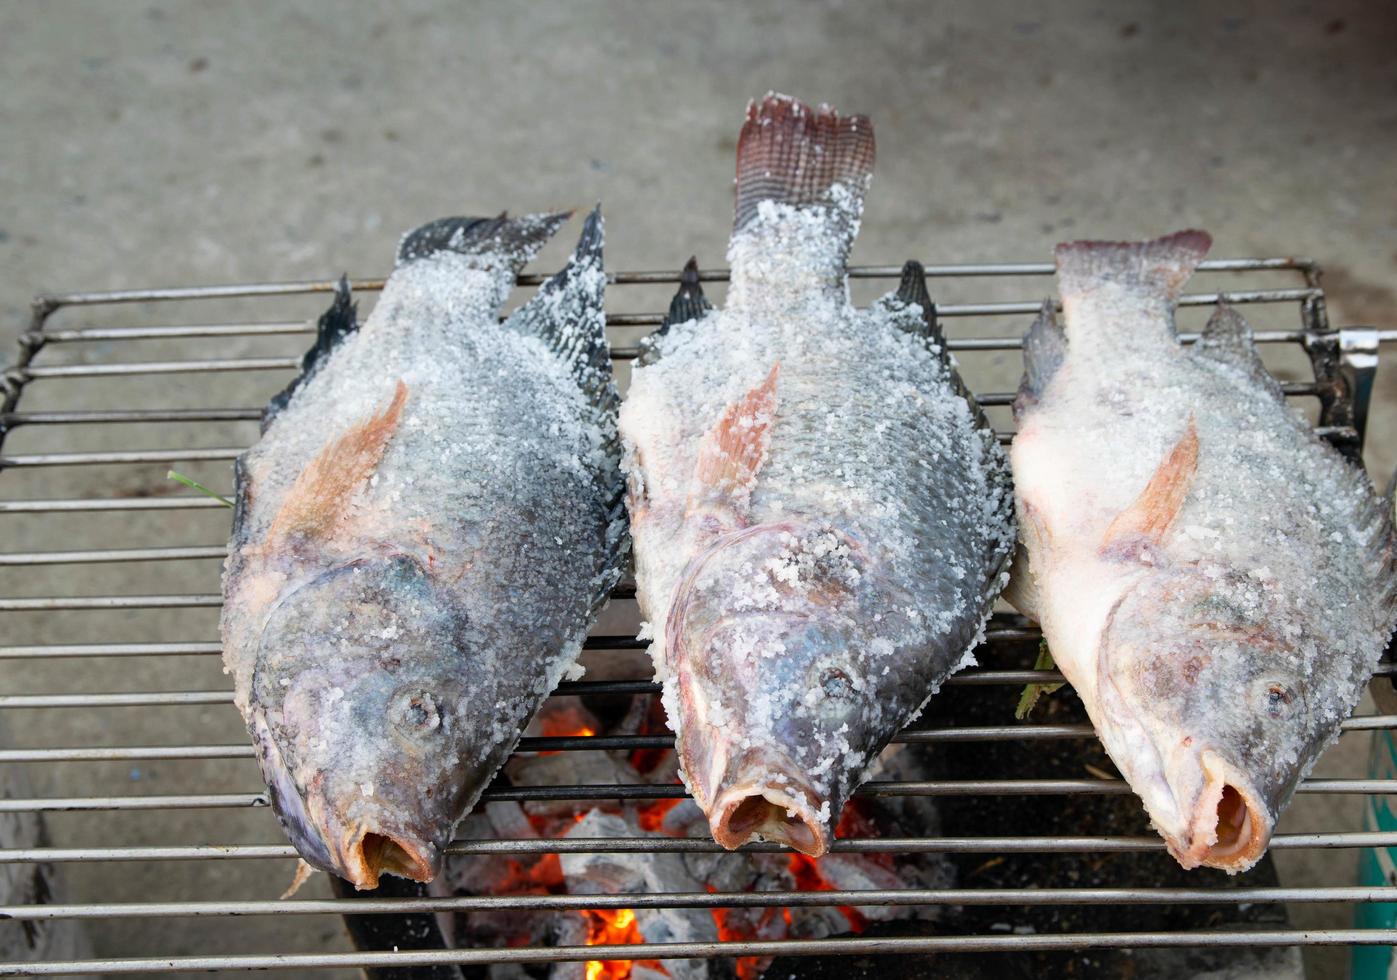 grilla fisk på spisen foto